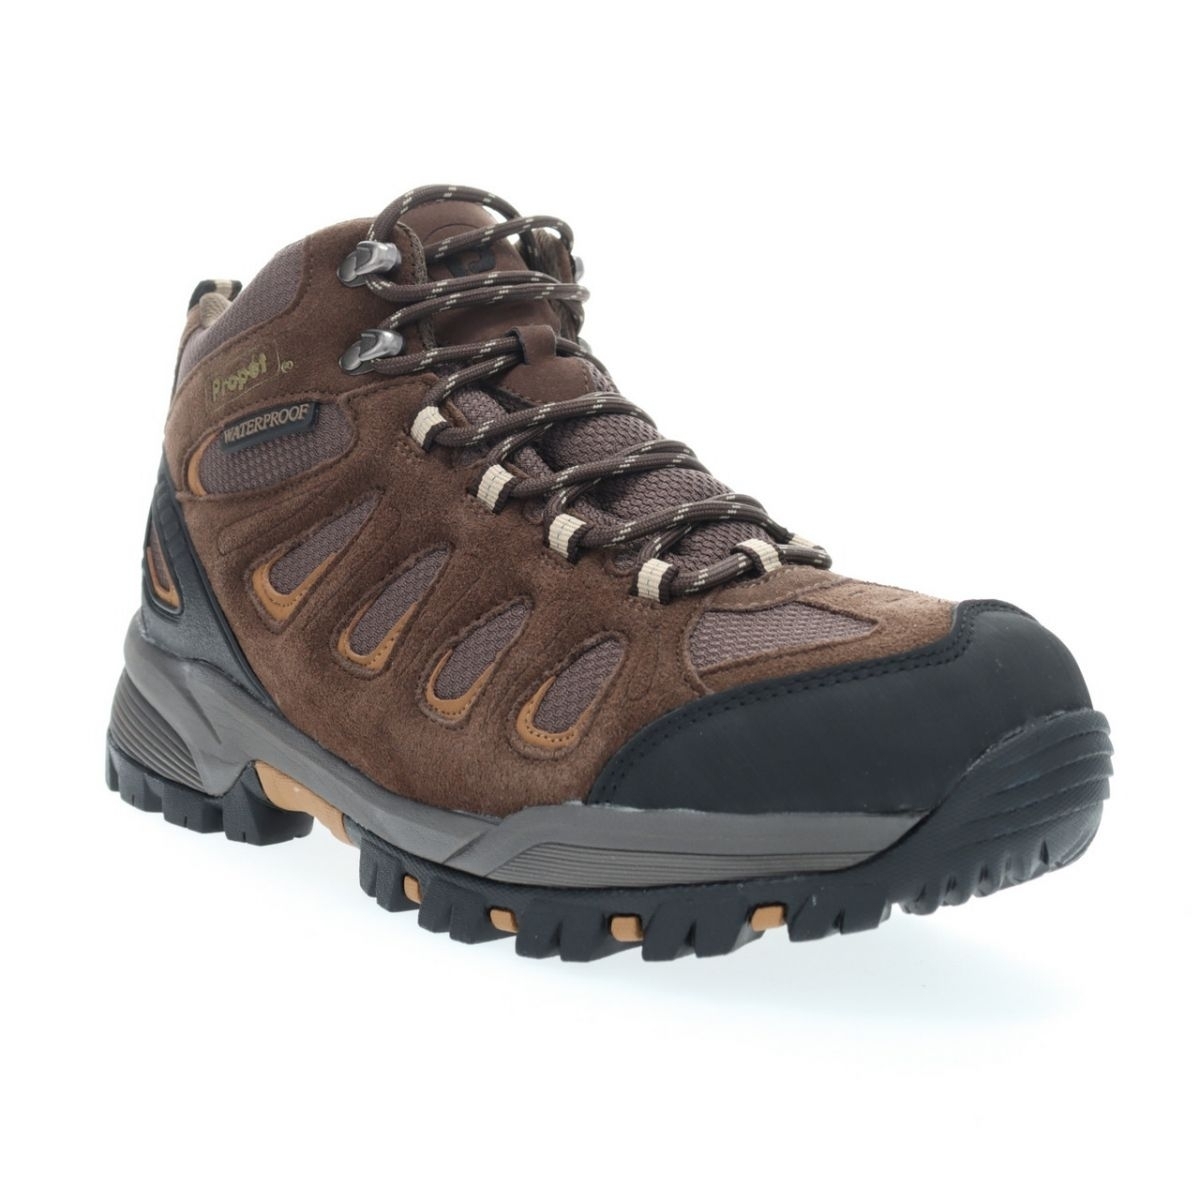 Propet Men's Ridge Walker Hiking Boot Brown - M3599BR 8 XX US Men BROWN - BROWN, 8.5 X-Wide